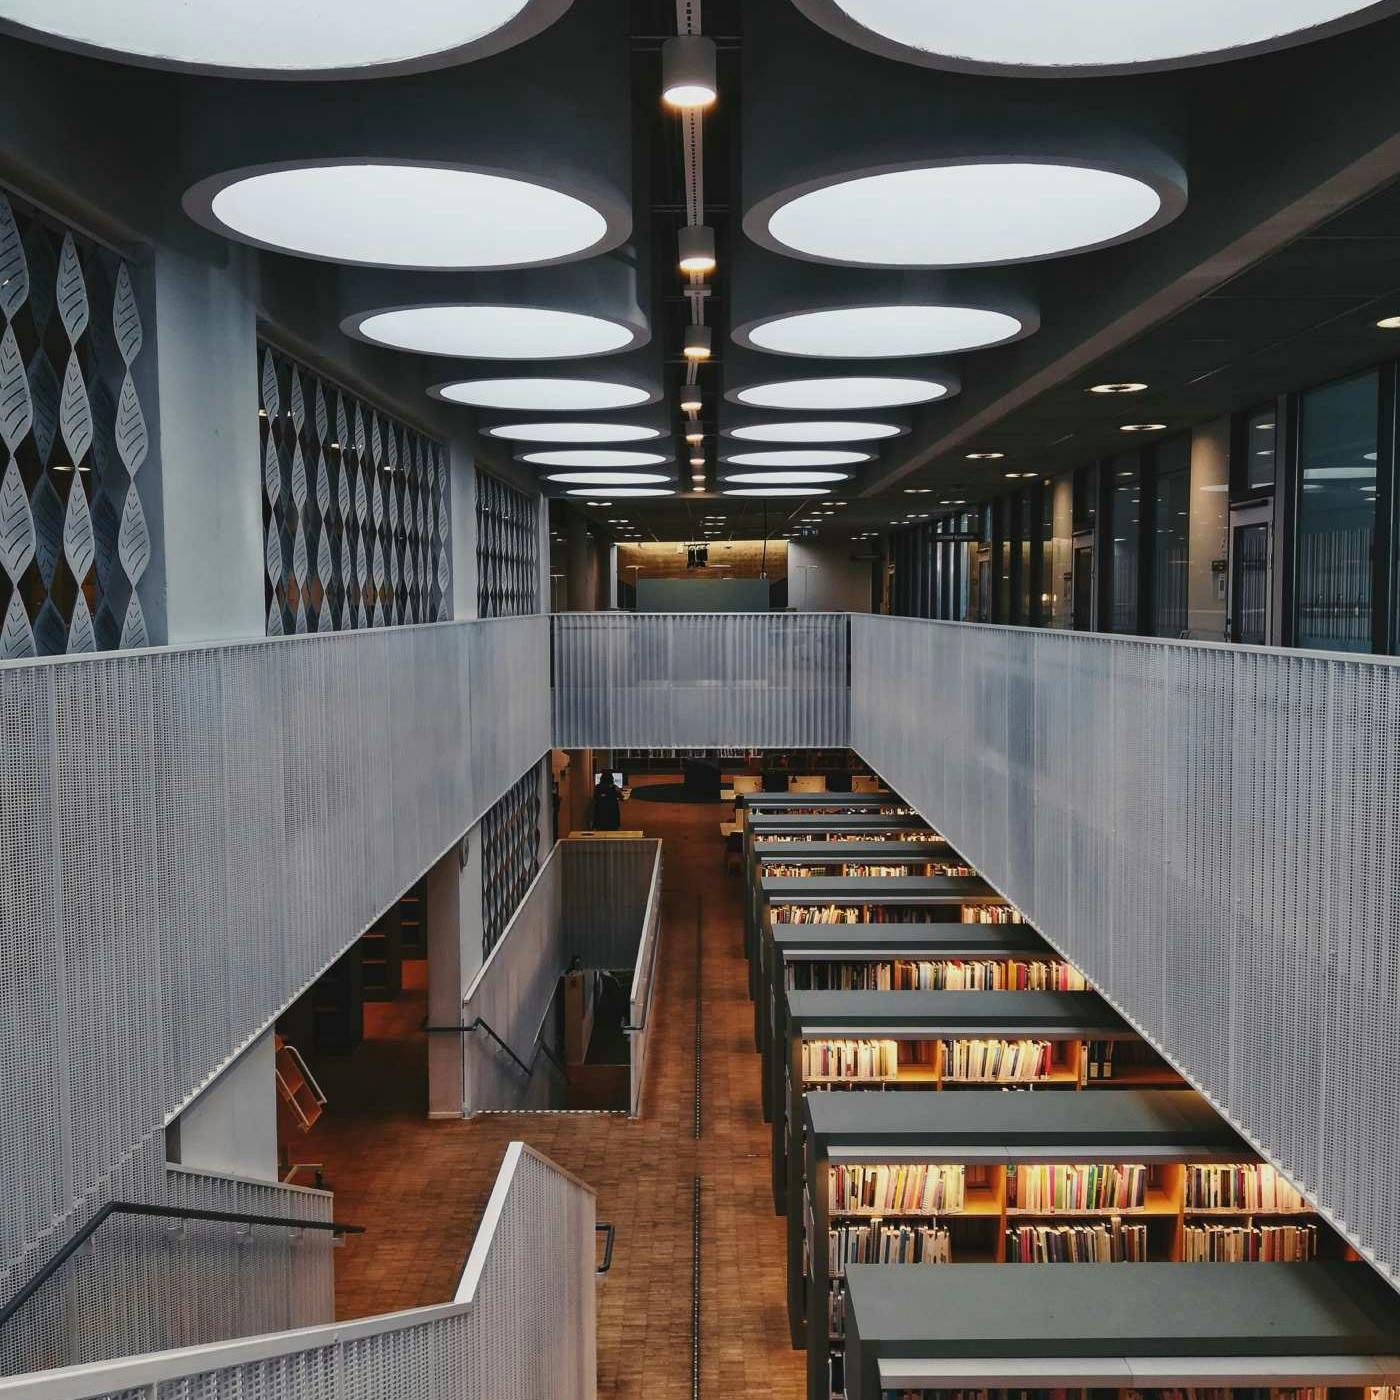 La foto di un corridoio di una libreria universitaria visto dalle scale al primo piano.